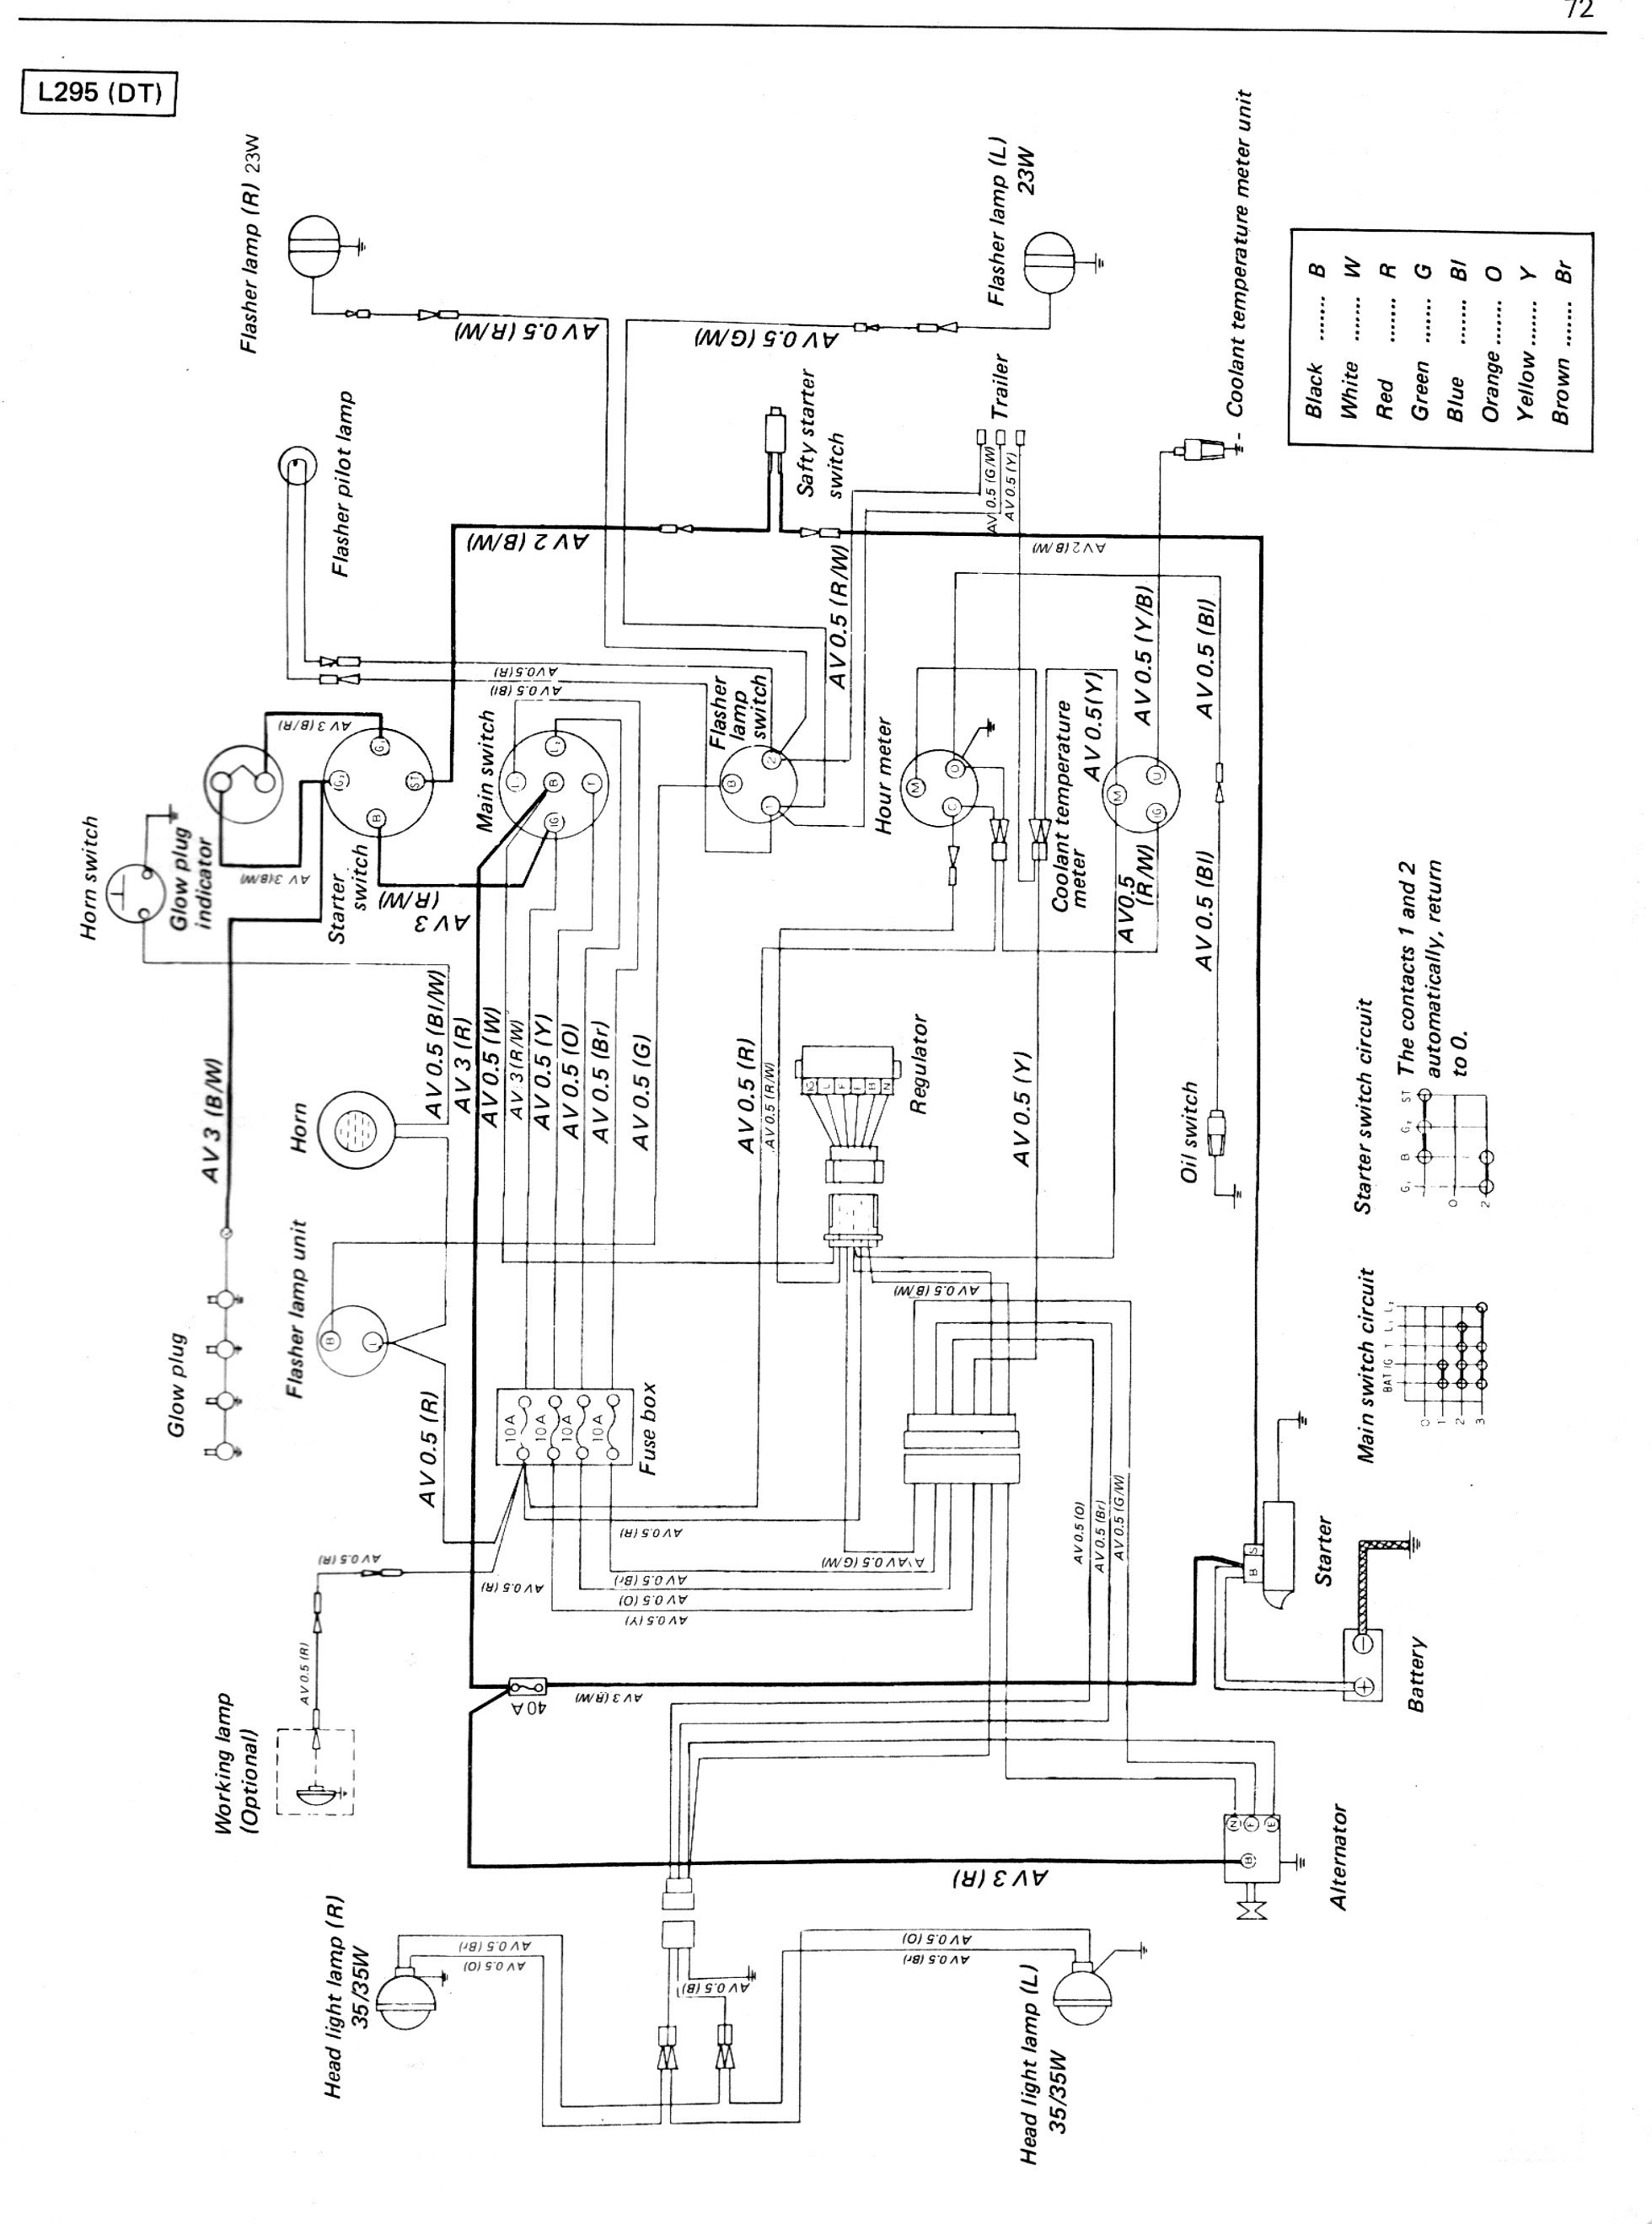 7 3 Diesel Engine Diagram Vw Wiring Diagram Alternator New Diesel Engine Alternator Wiring Of 7 3 Diesel Engine Diagram